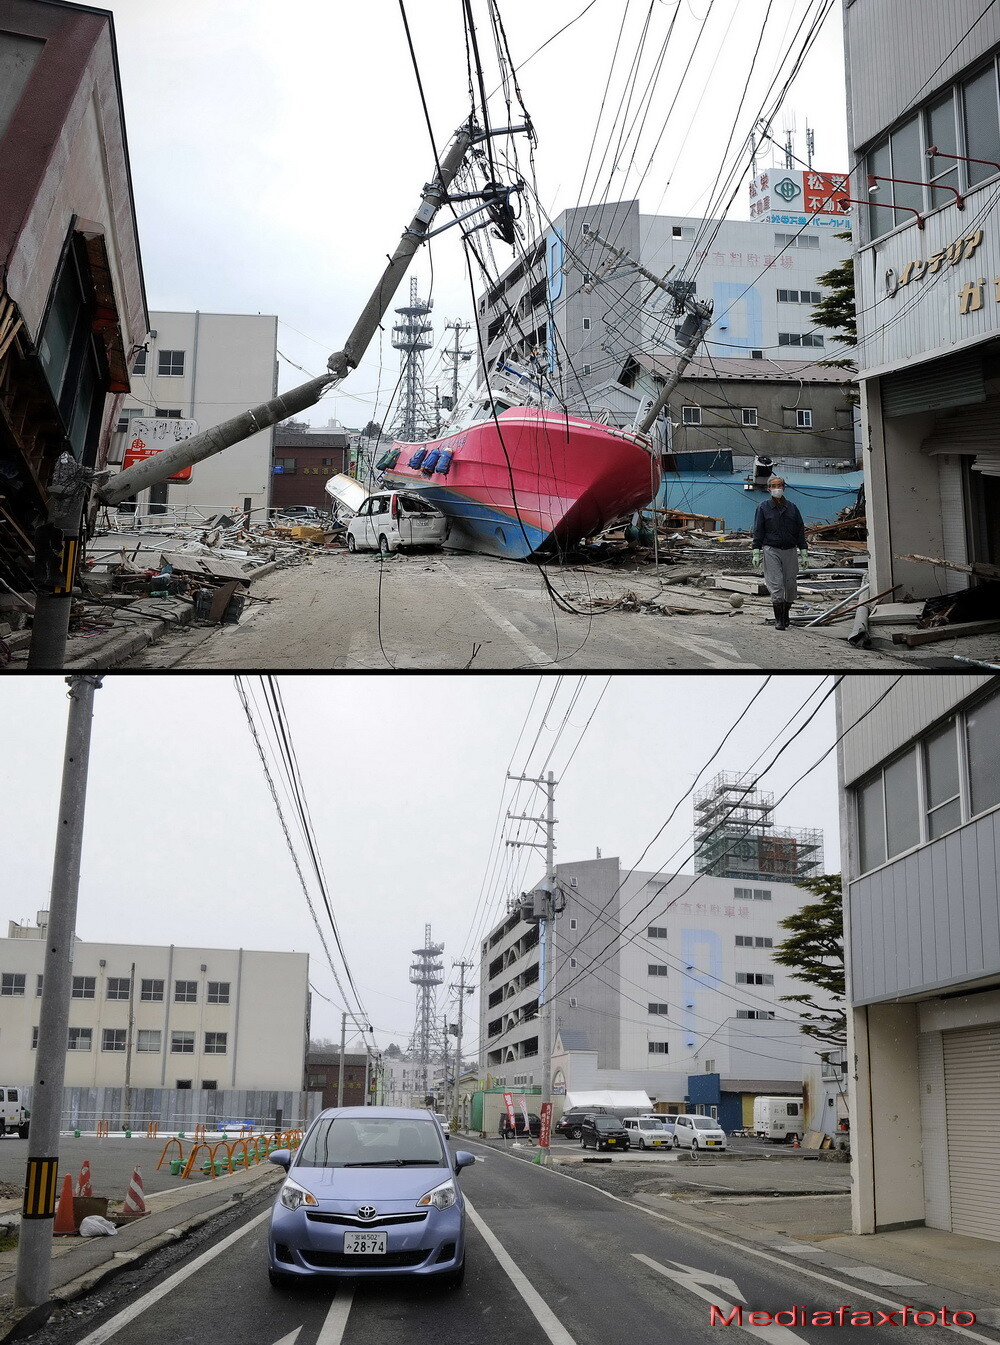 Barca de pe casa, imaginea simbol a Japoniei dupa tsunami. Cum arata acest loc astazi - Imaginea 6